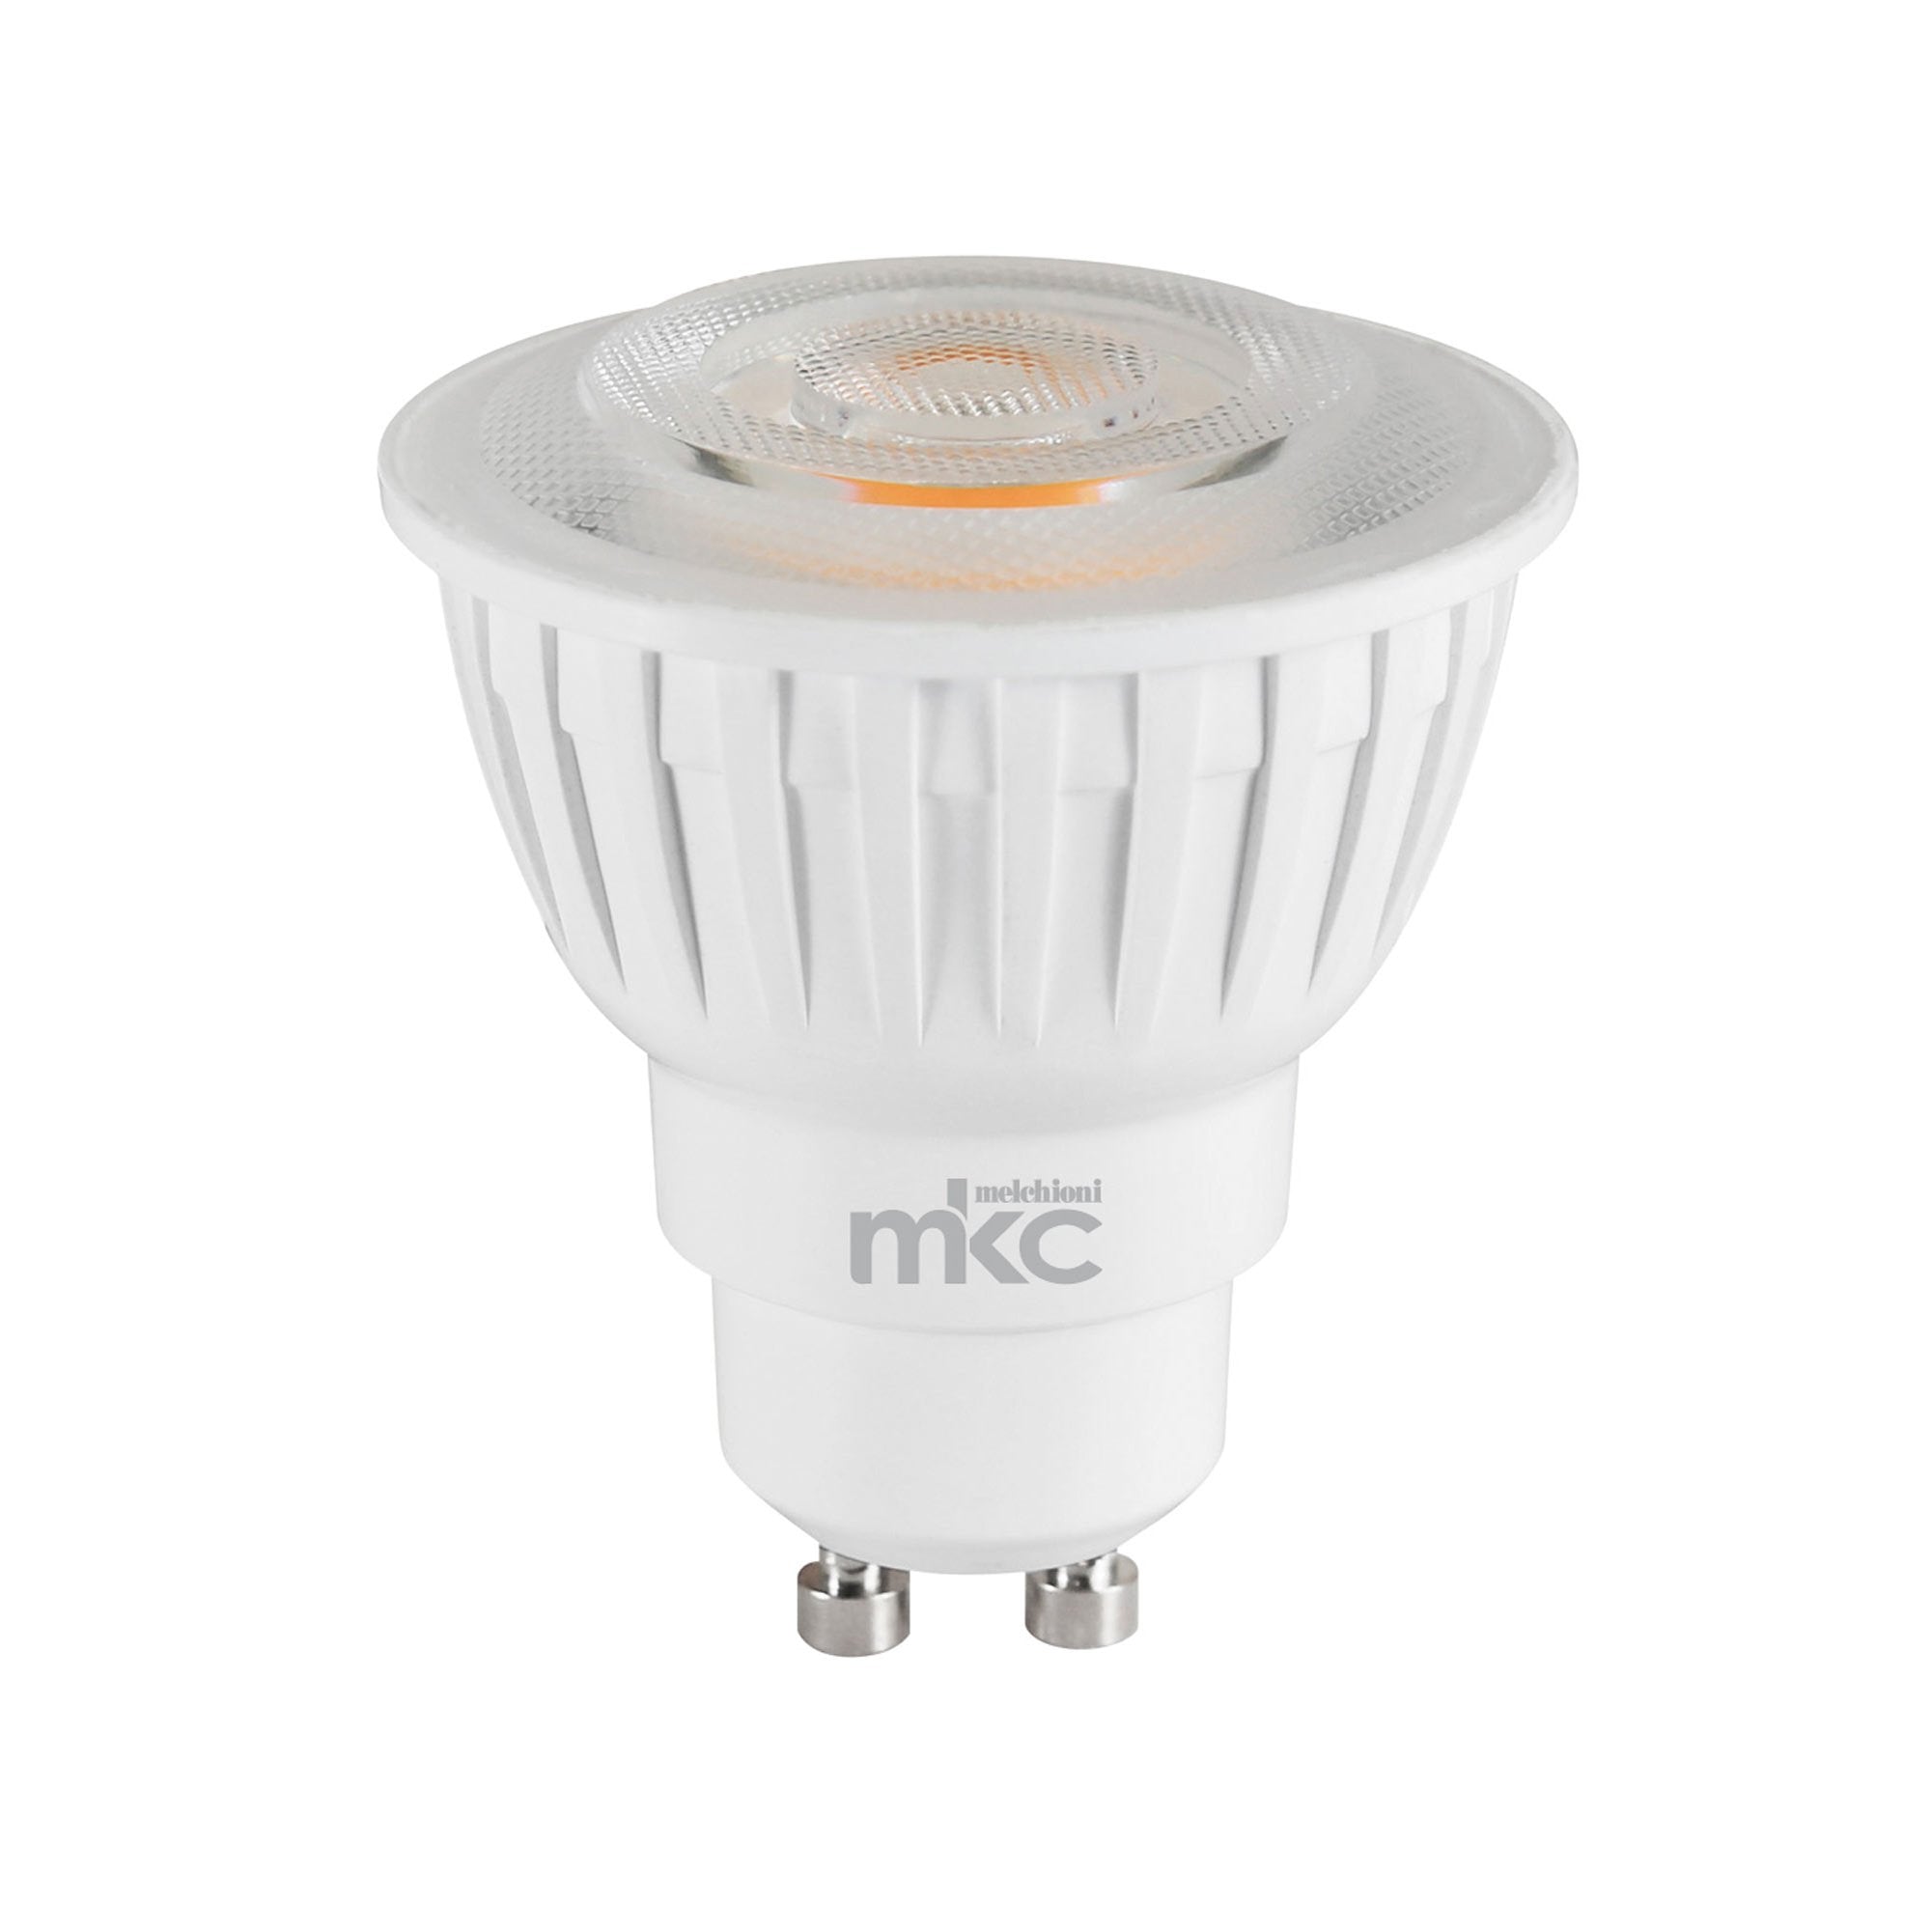 mkc-lampada-led-mr-gu10-7-5w-gu10-4000k-luce-bianca-naturale